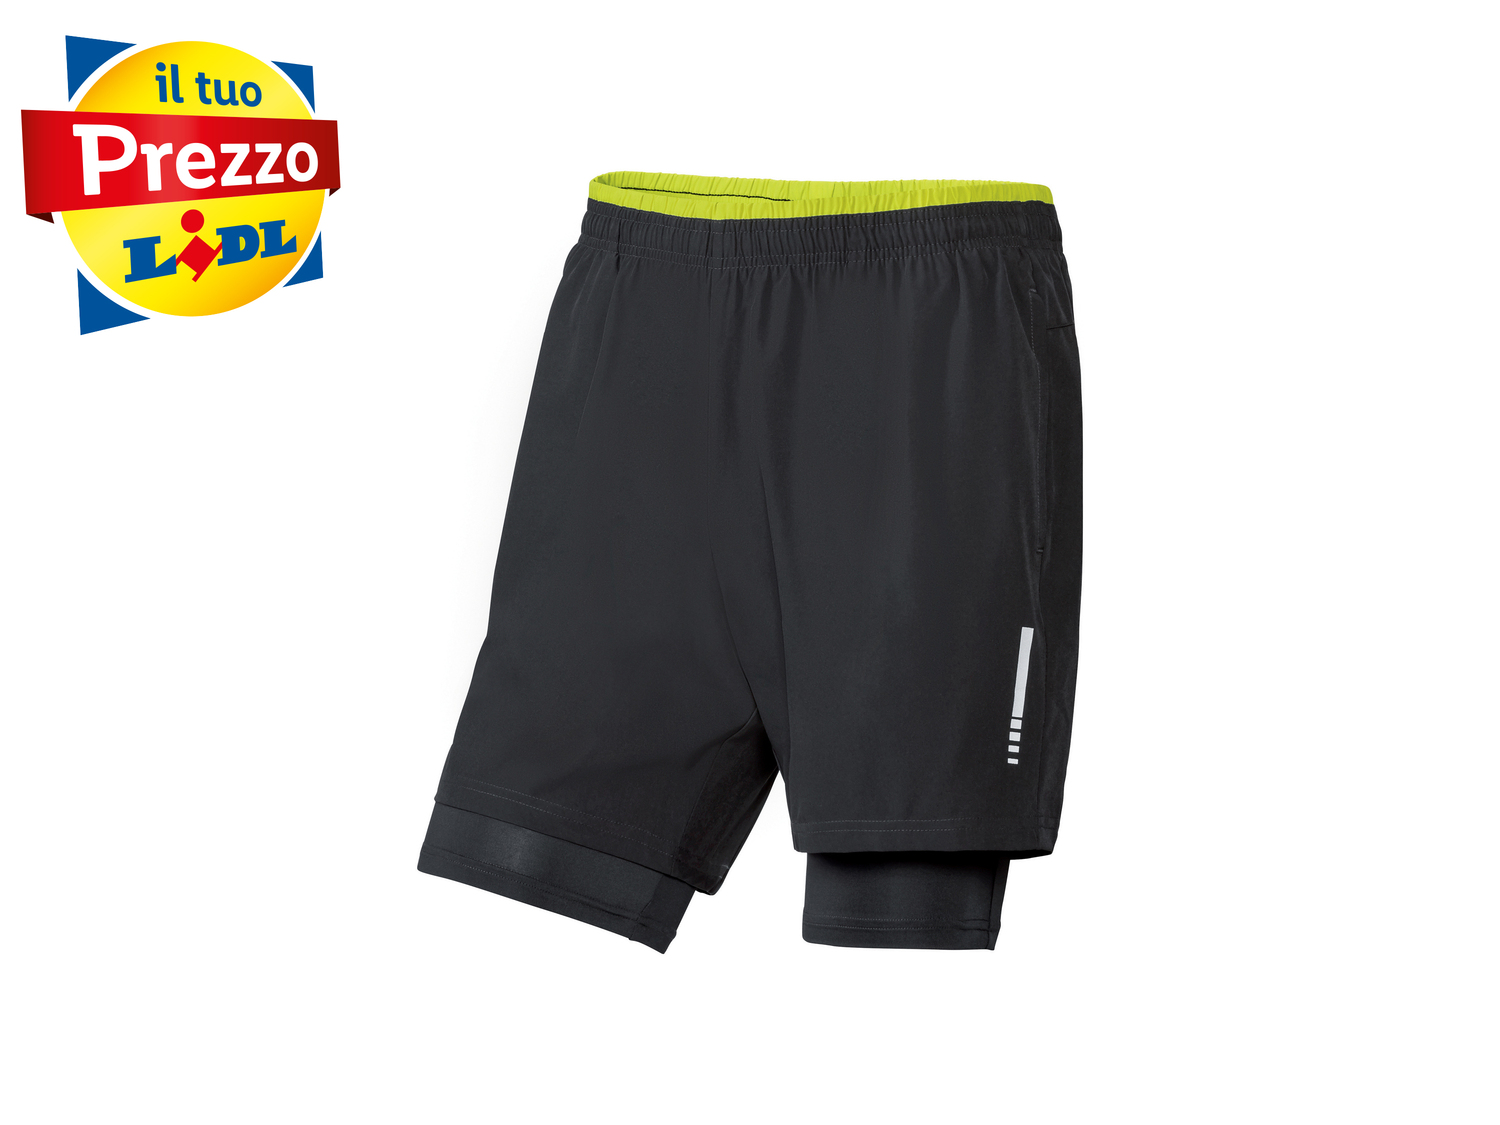 Shorts sportivi da uomo Crivit, prezzo 6.99 &#8364; 
Misure: S-XL 
- Si asciuga ...